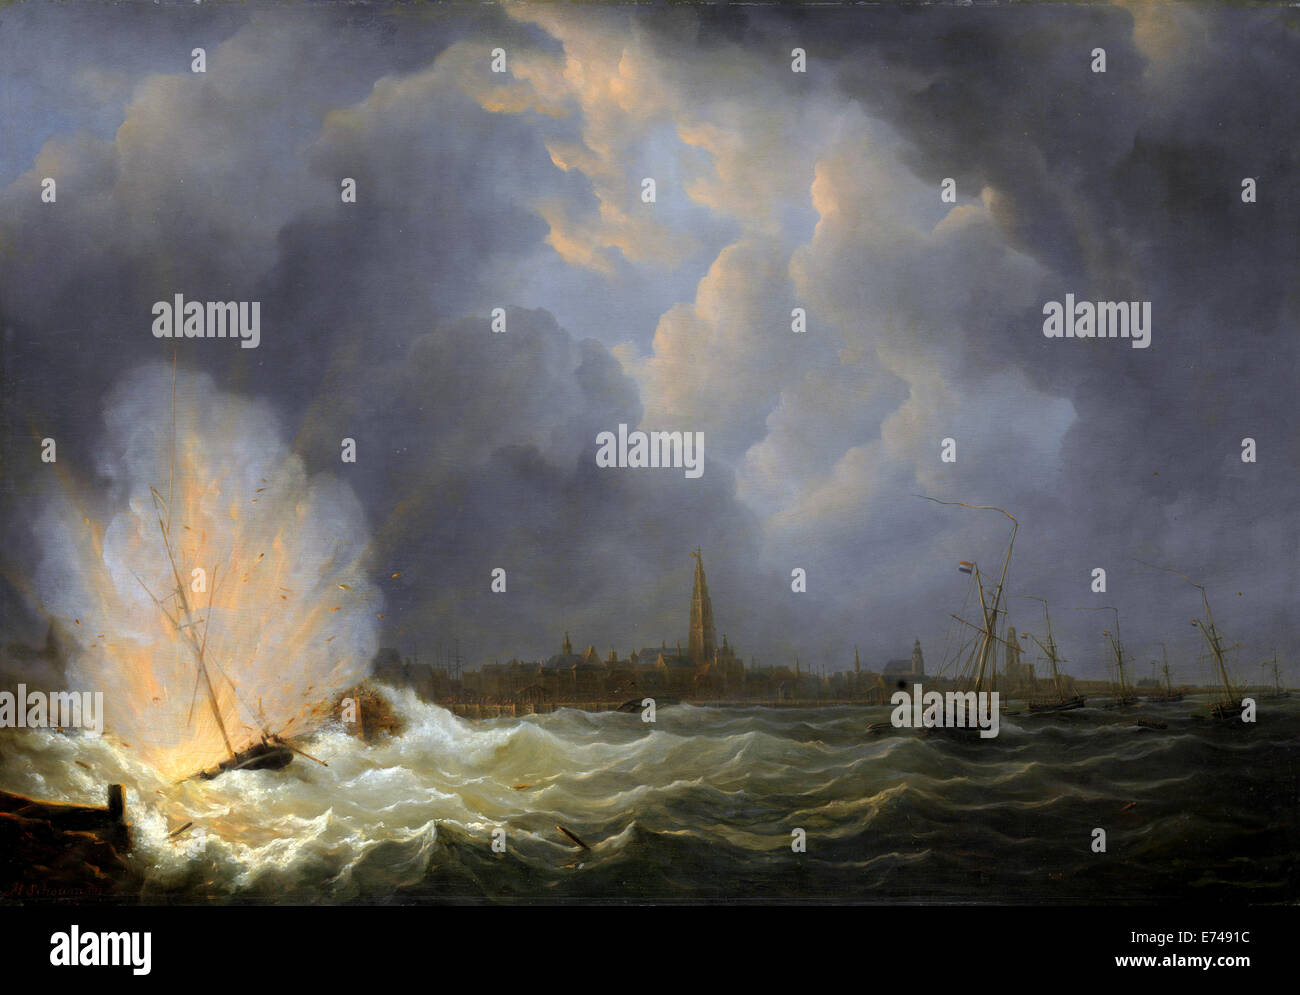 La explosión de la cañonera nº 2 bajo el mando de Jan van Speijk, Amberes, 5 de febrero de 1831 - por Martinus Schouman, 1832 Foto de stock